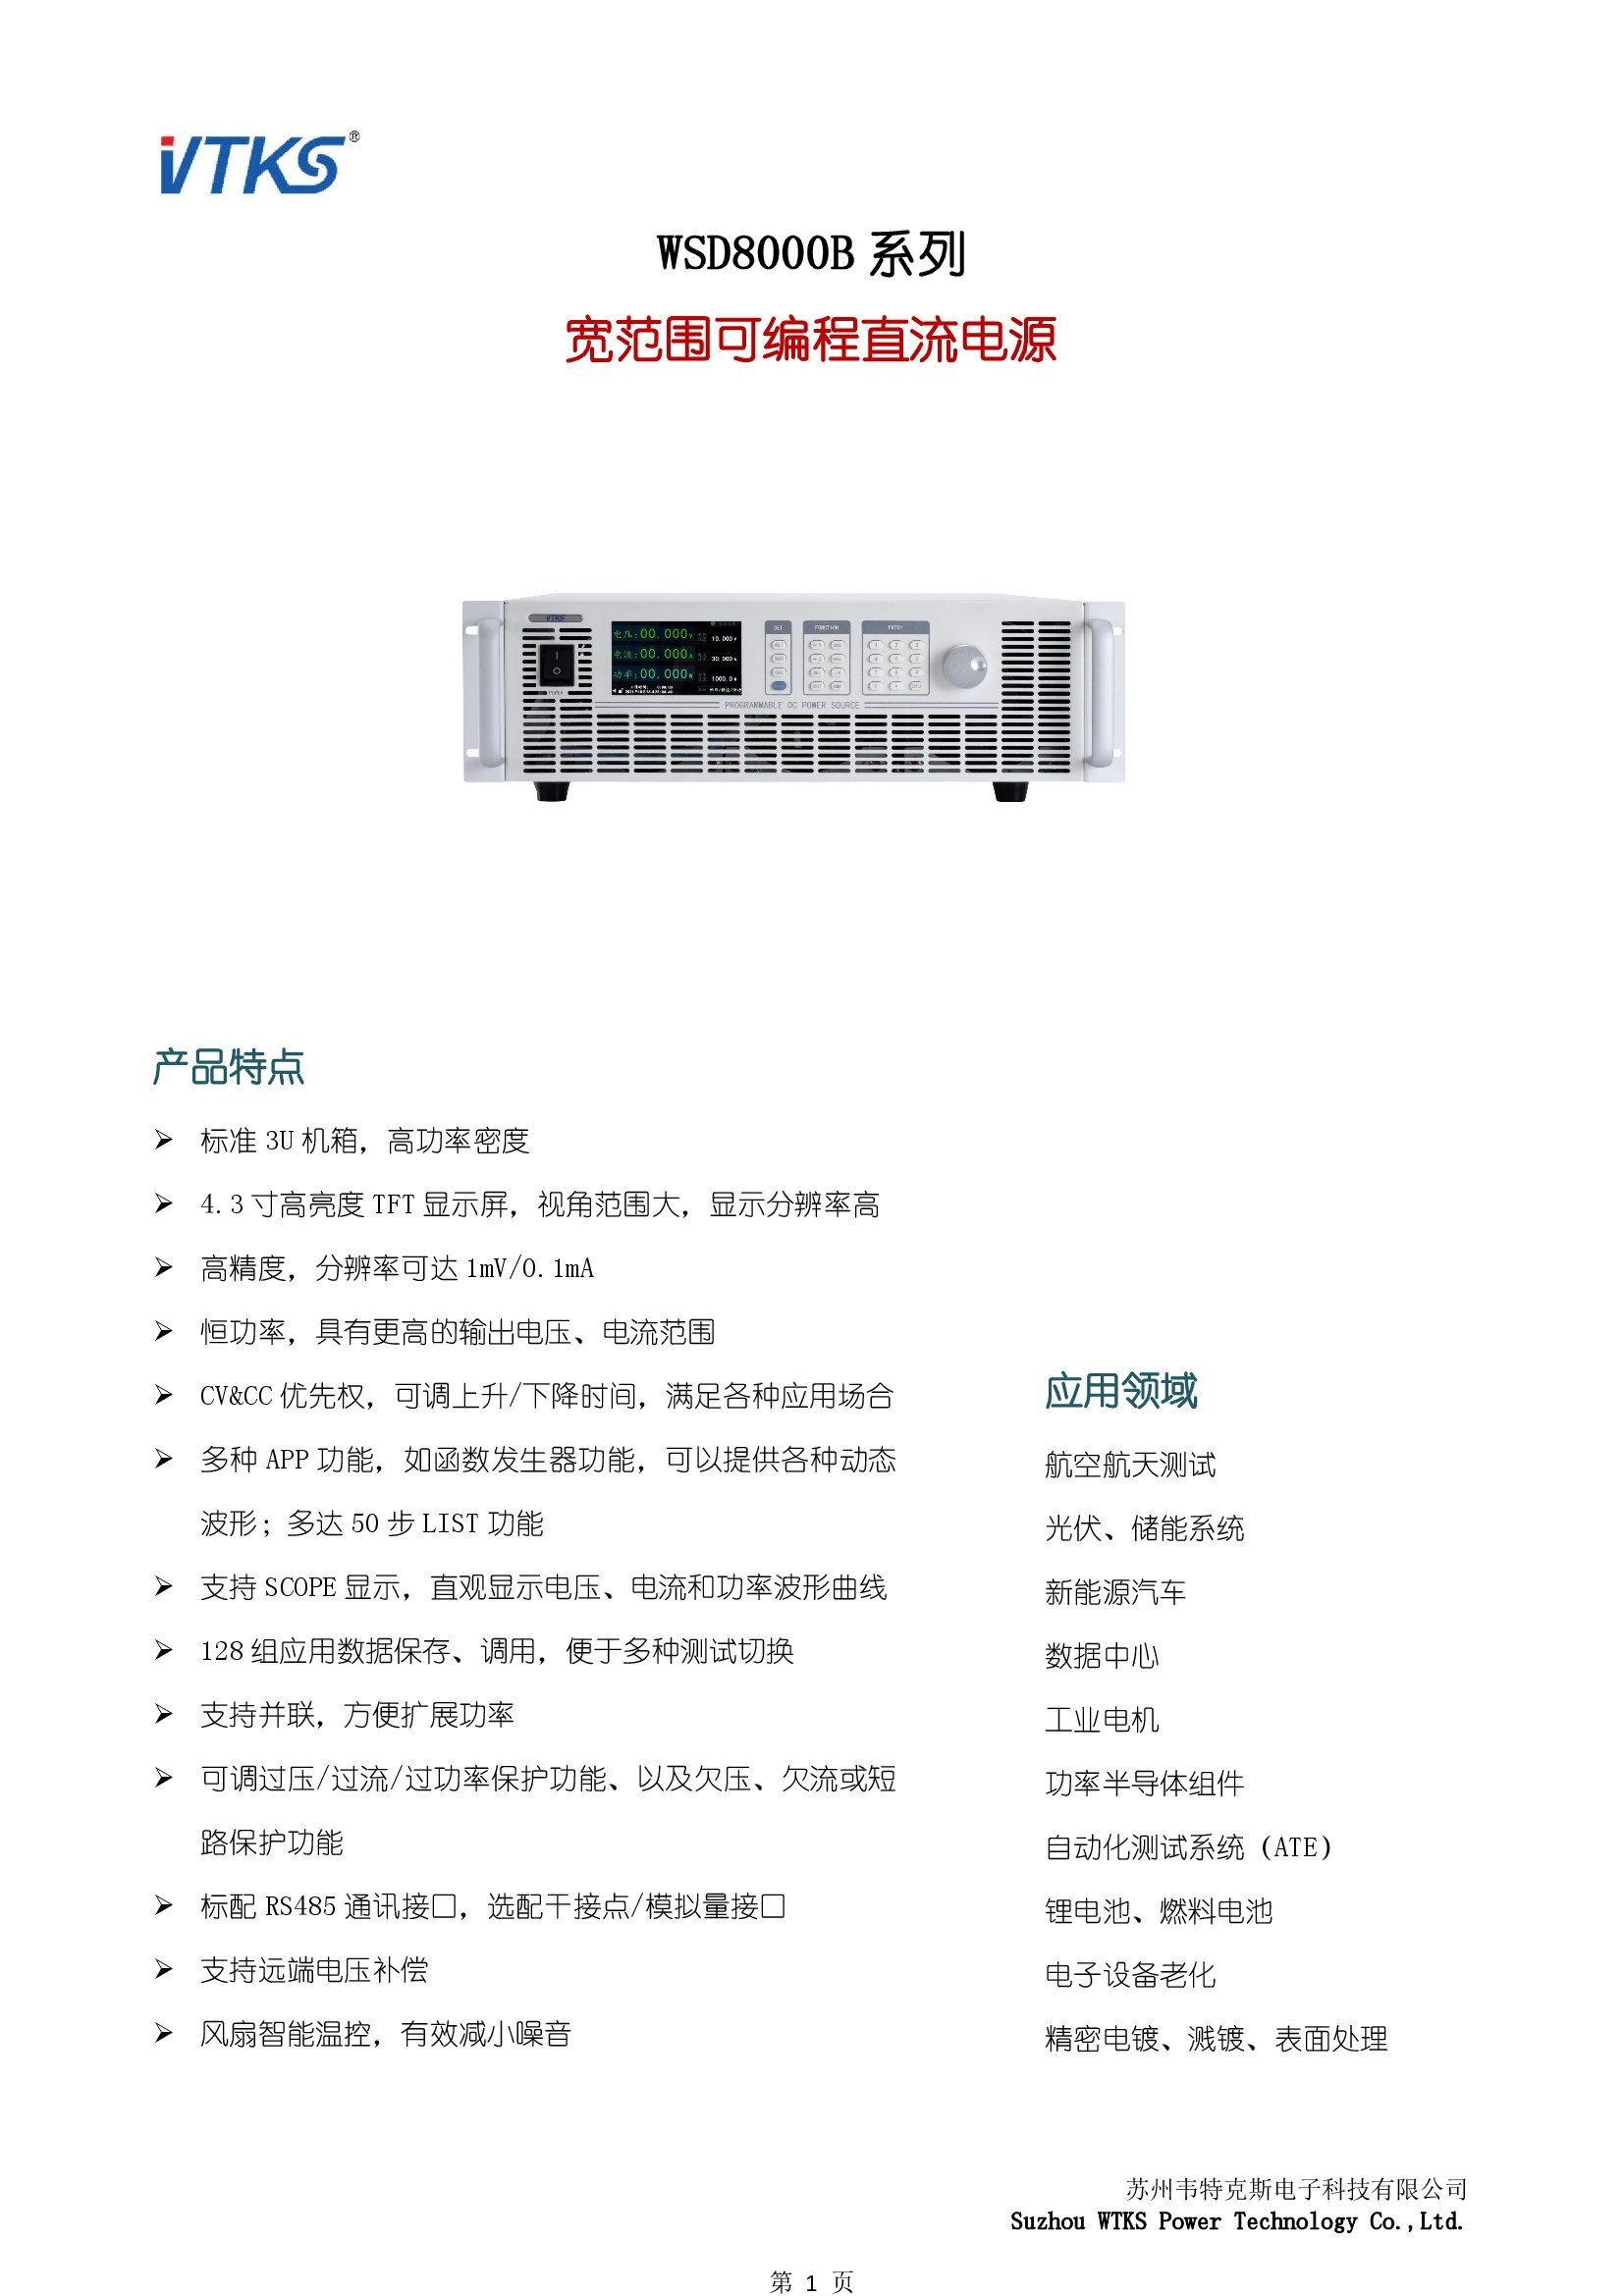 WSD8000B系列宽范围可编程直流电源技术资料_V1.14_00001.jpg